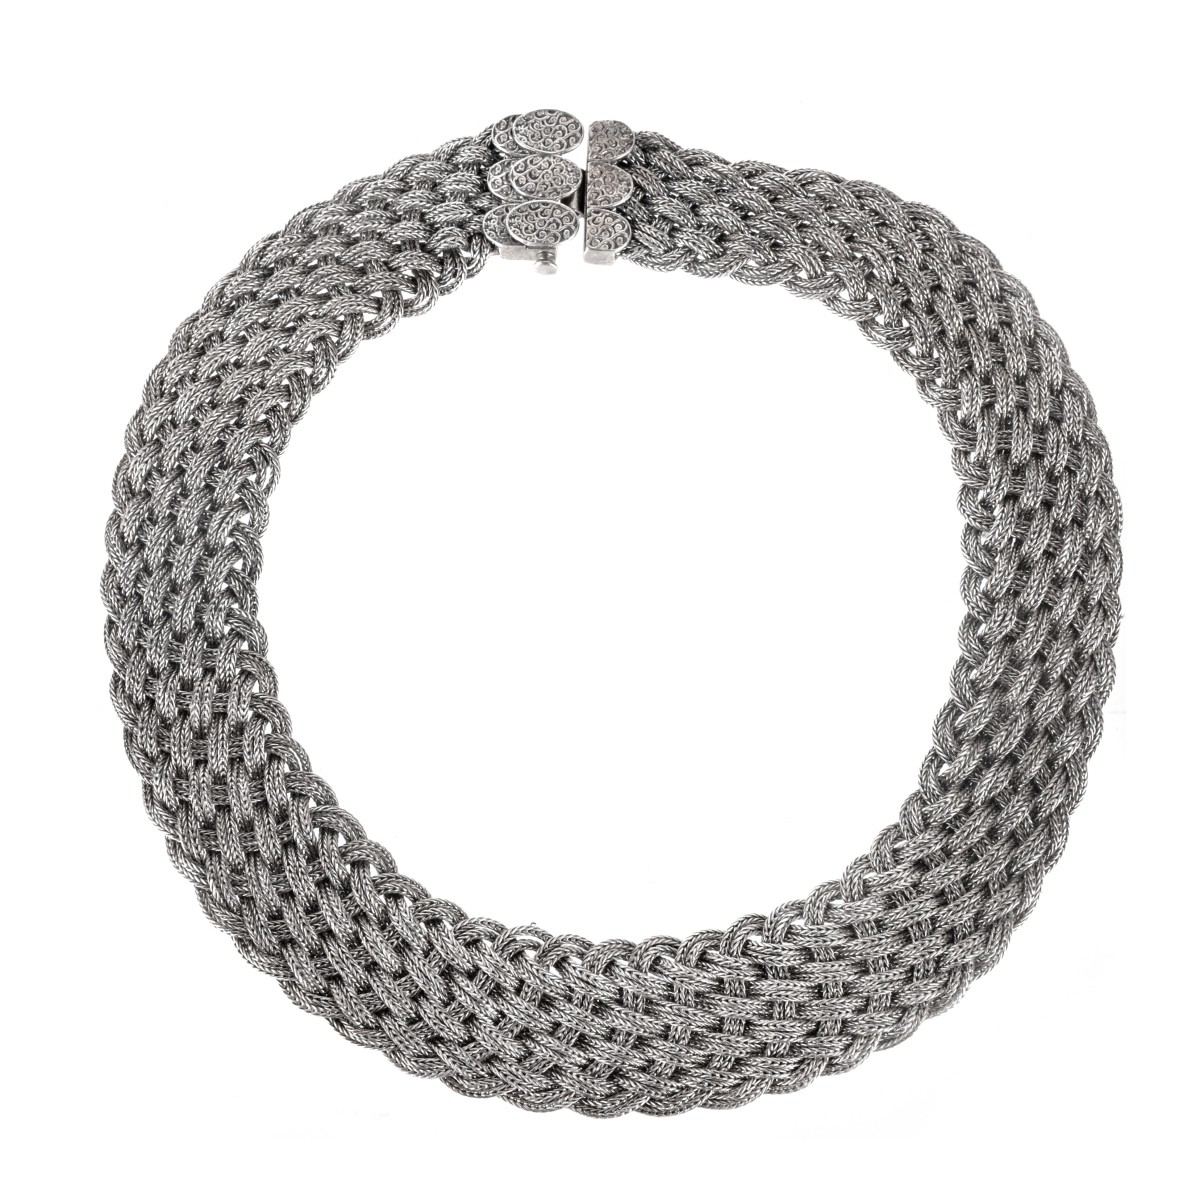 Anatoli Silver Necklace and Bracelet